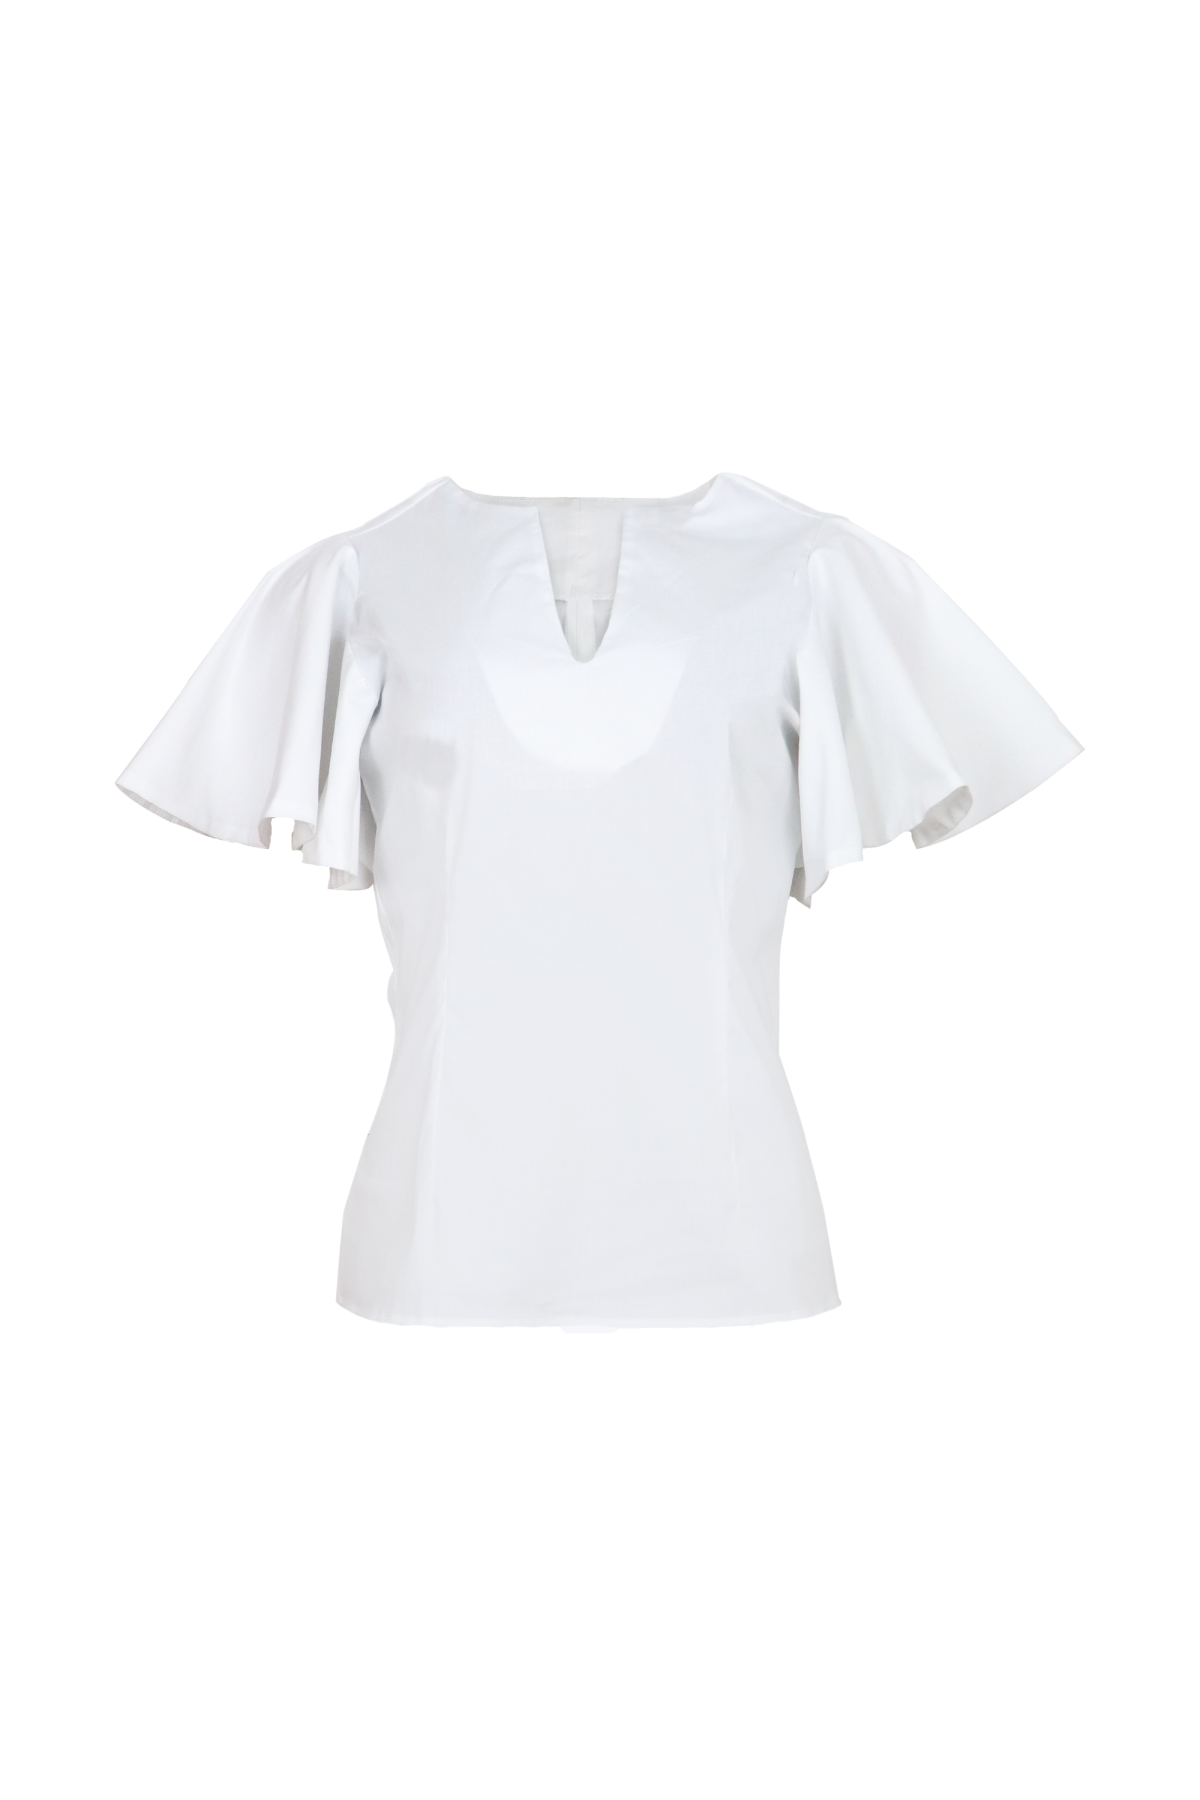 Blusa blanca con mangas cortas y cuello en V.